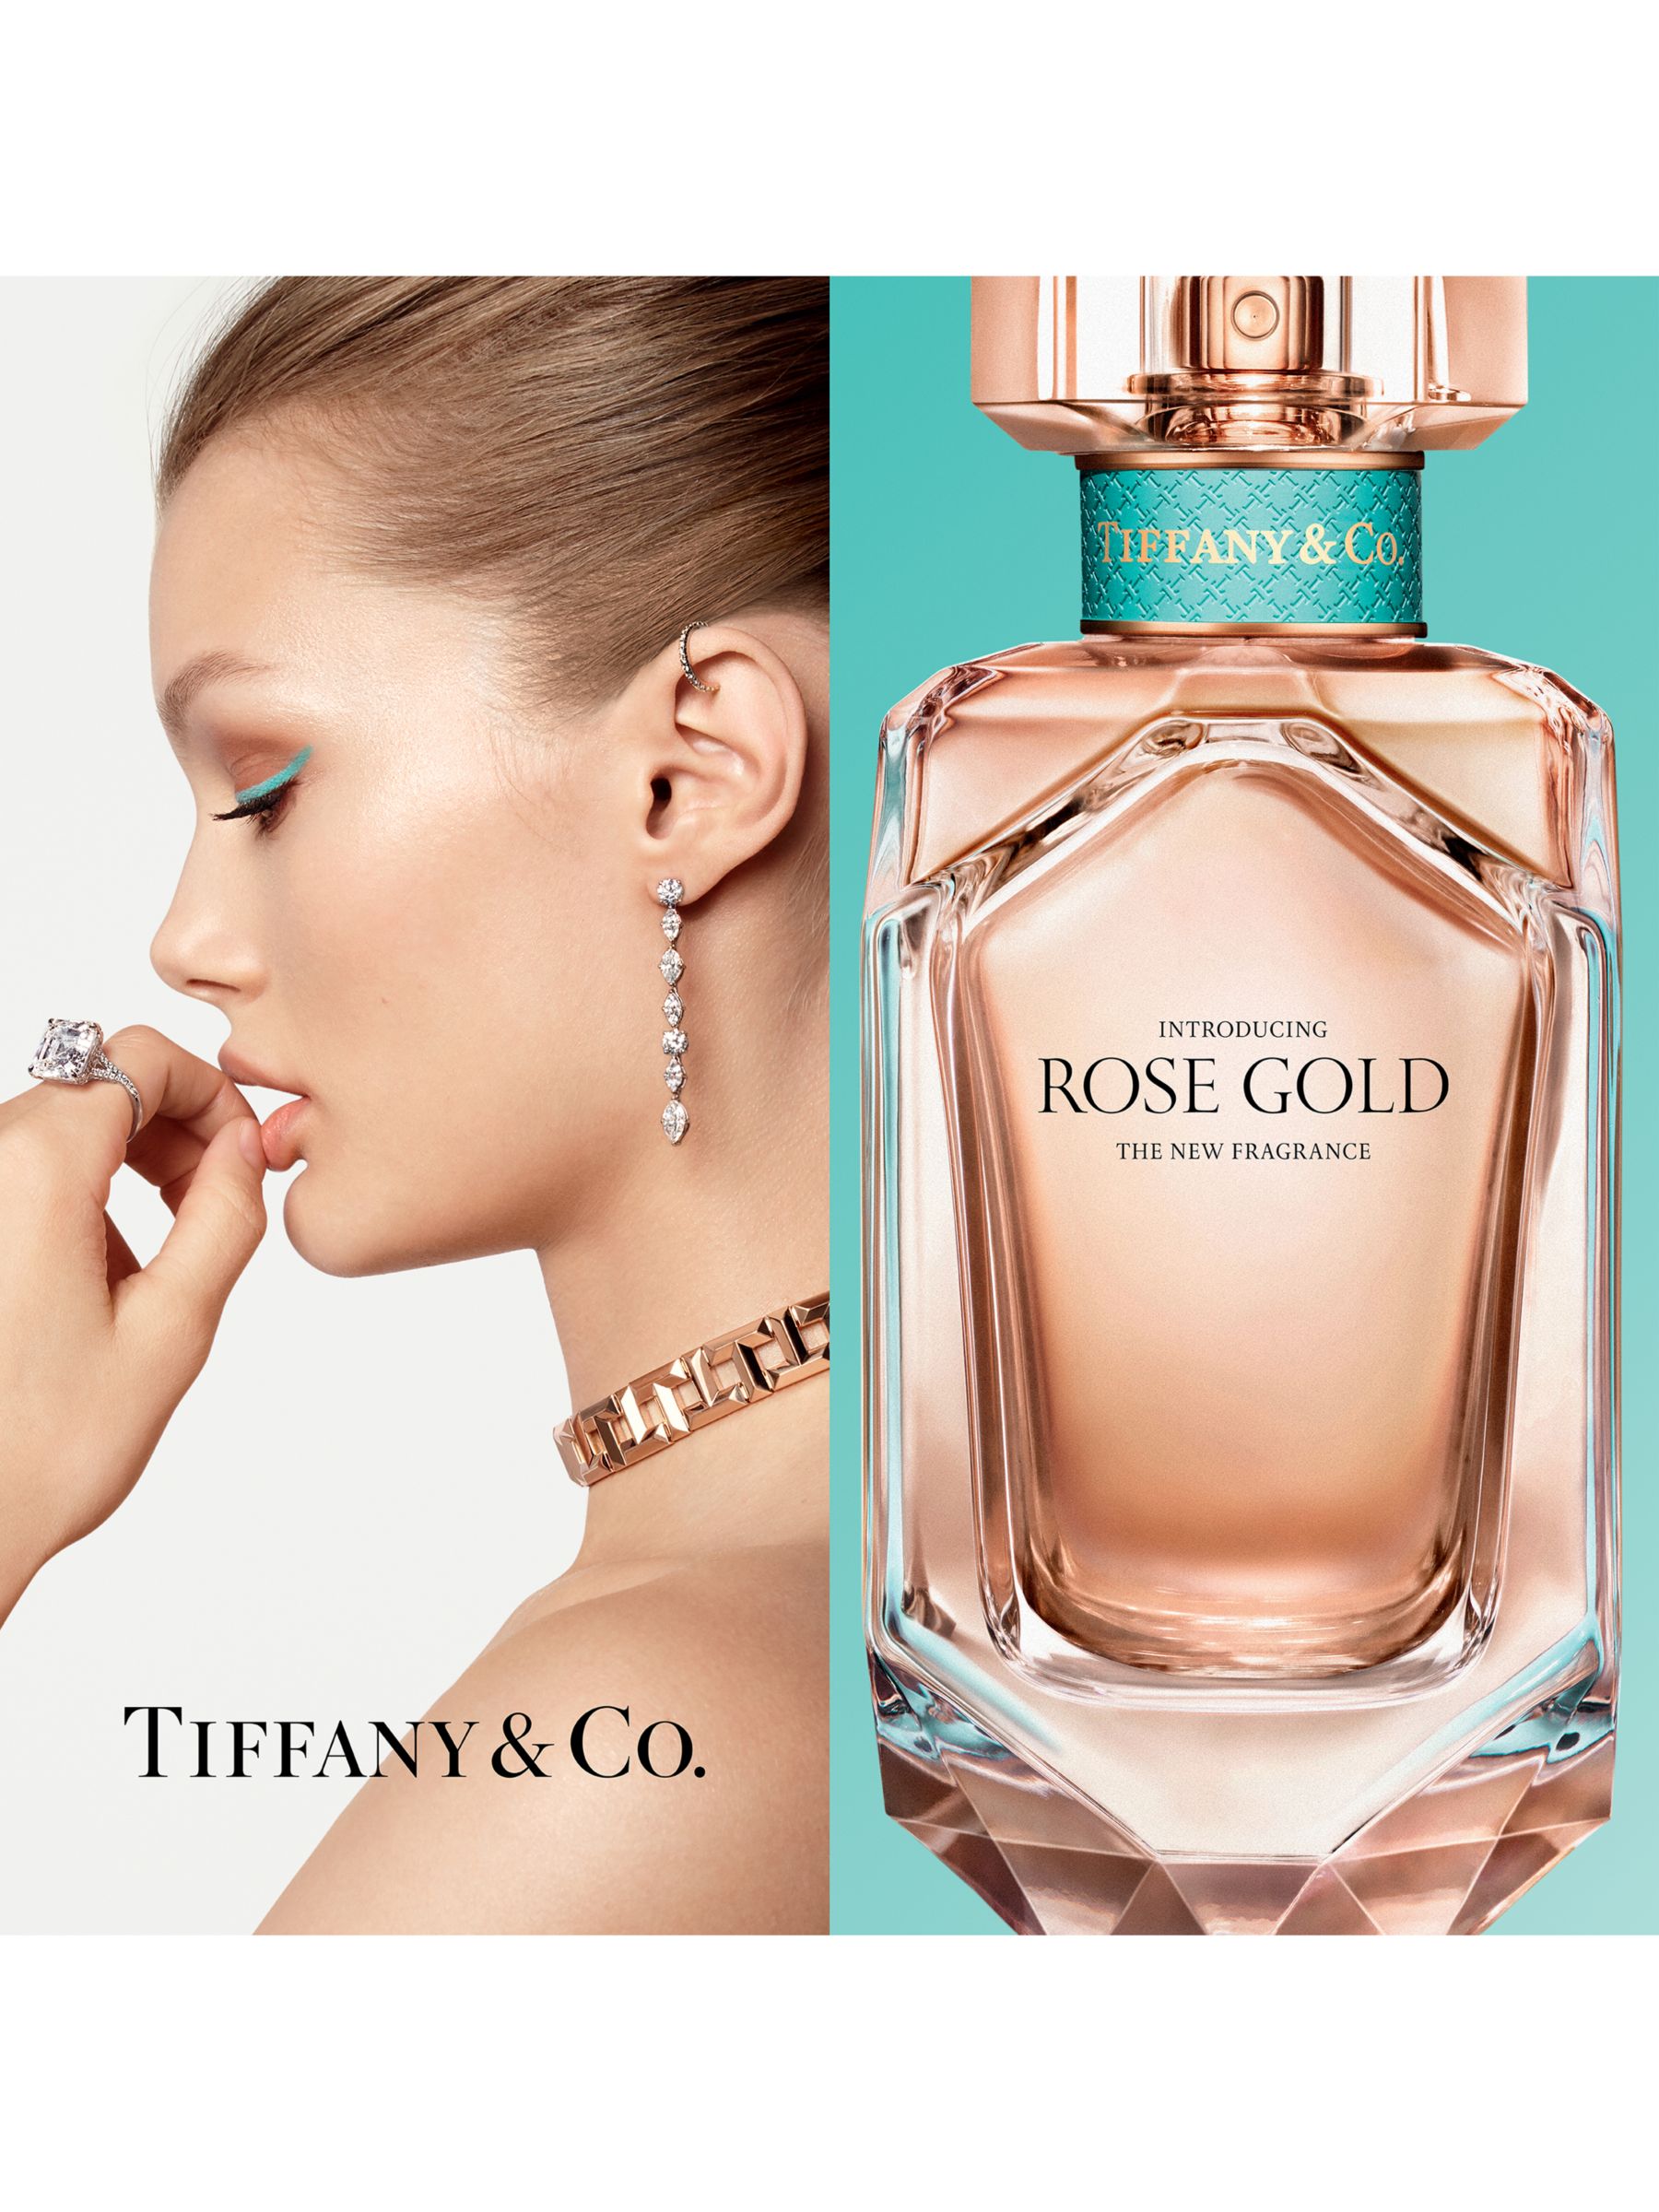 Tiffany & Co Rose Gold Eau de Parfum, 30ml at John Lewis & Partners